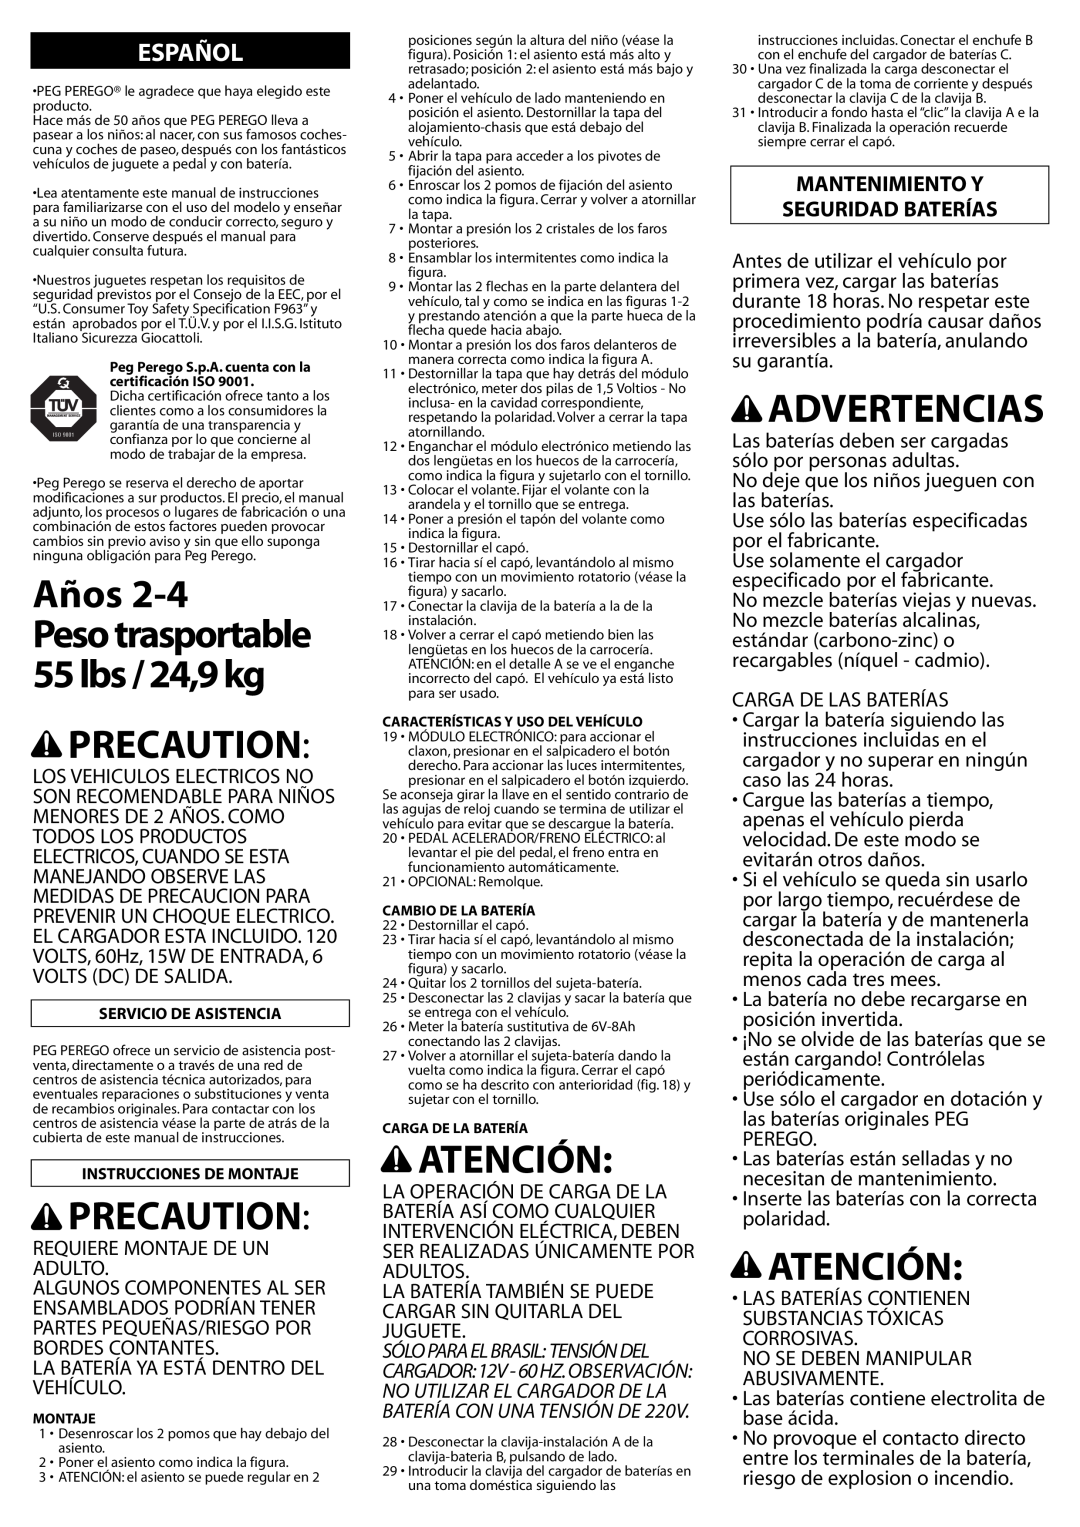 Peg-Perego IGED1061 6V manual Años, Precaution, Atención, Advertencias, Peso trasportable 55 lbs / 24,9 kg, Español 